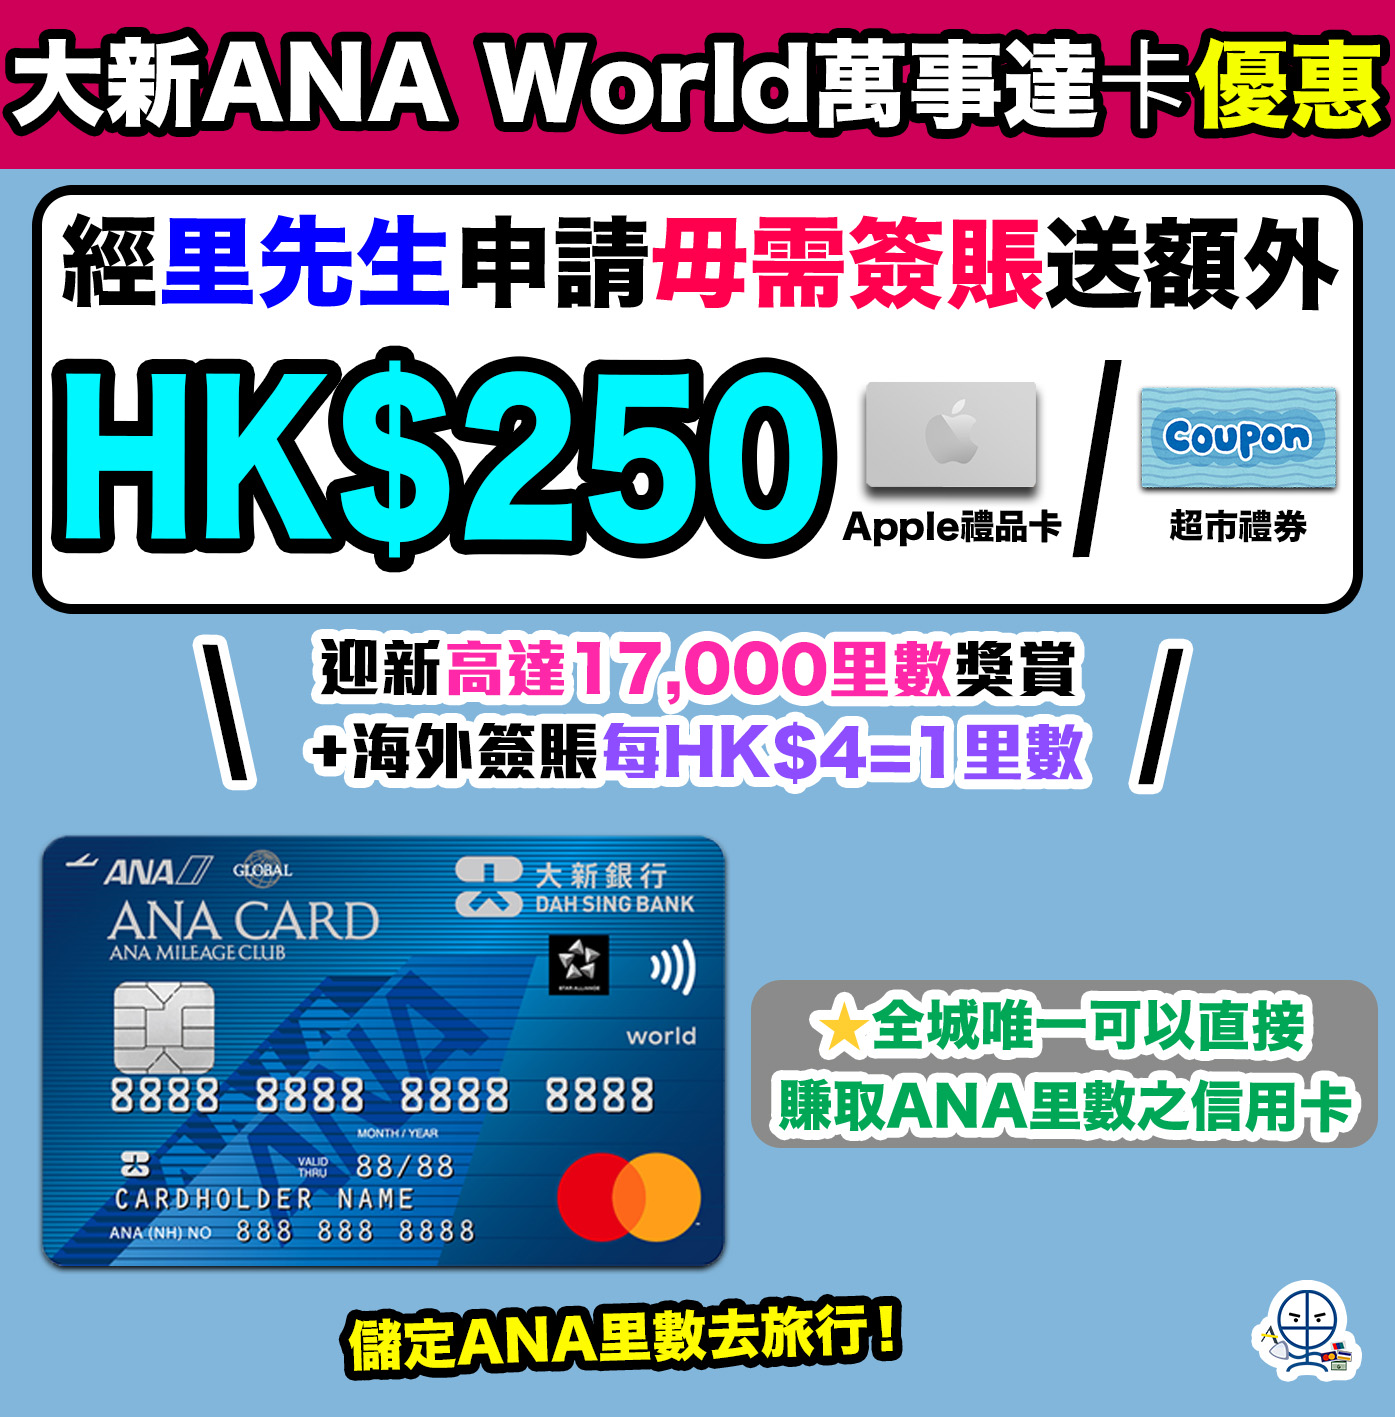 大新-ana-信用卡